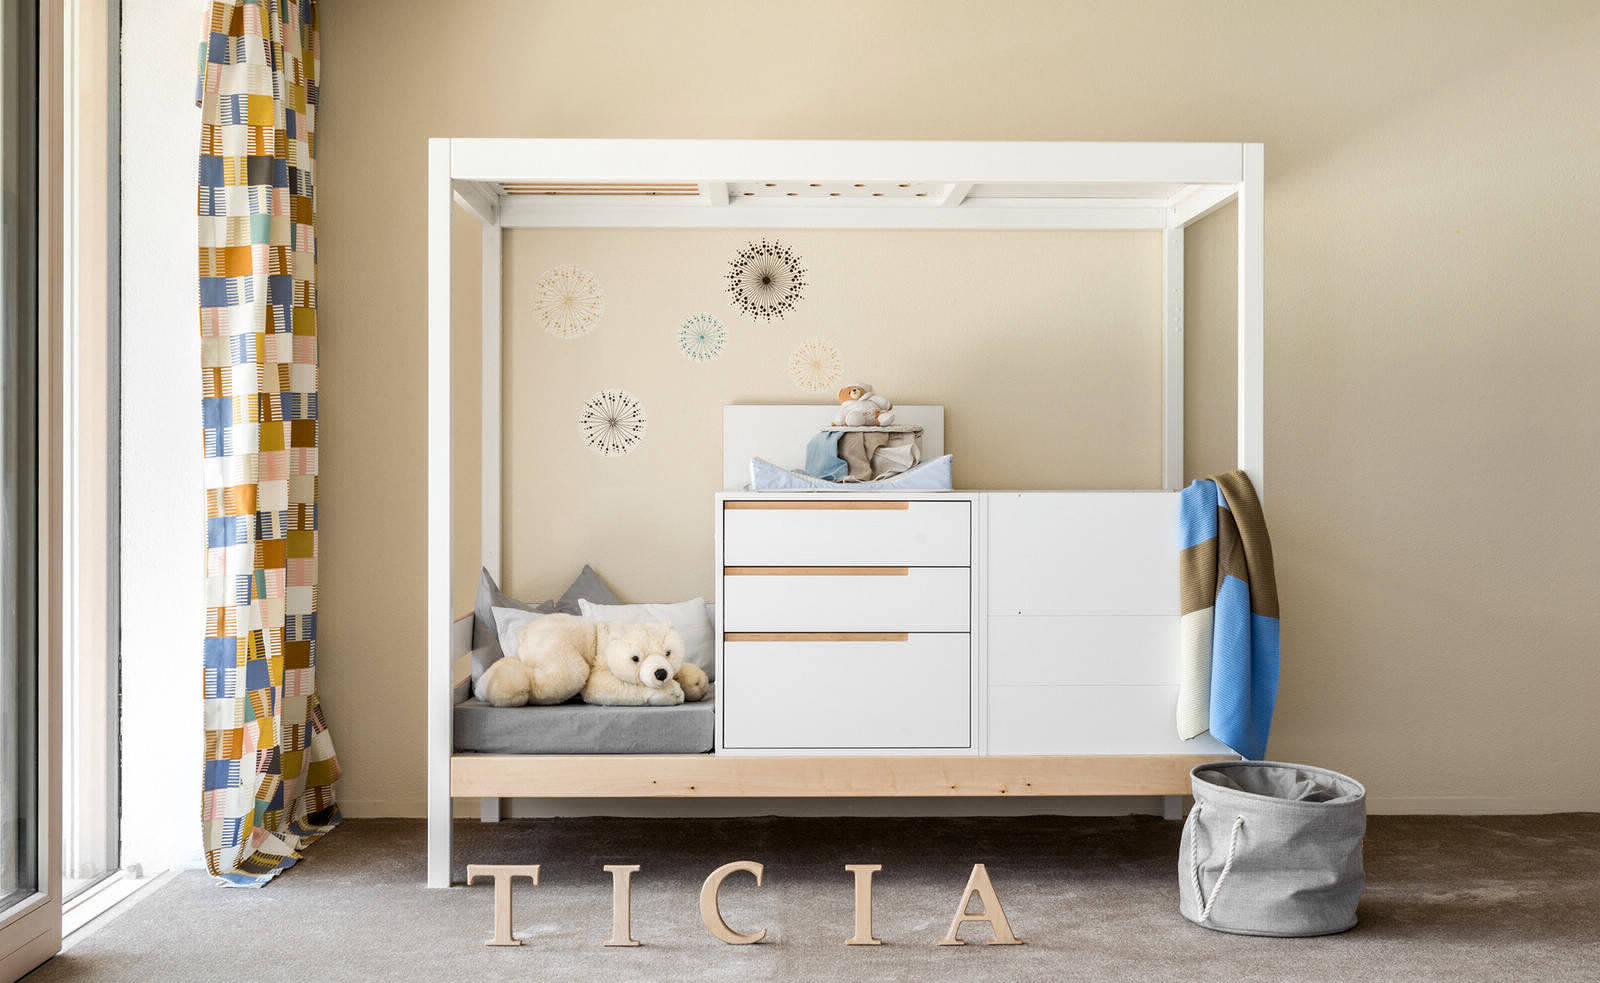 Ticia — кровать, которая растёт с ребёнком